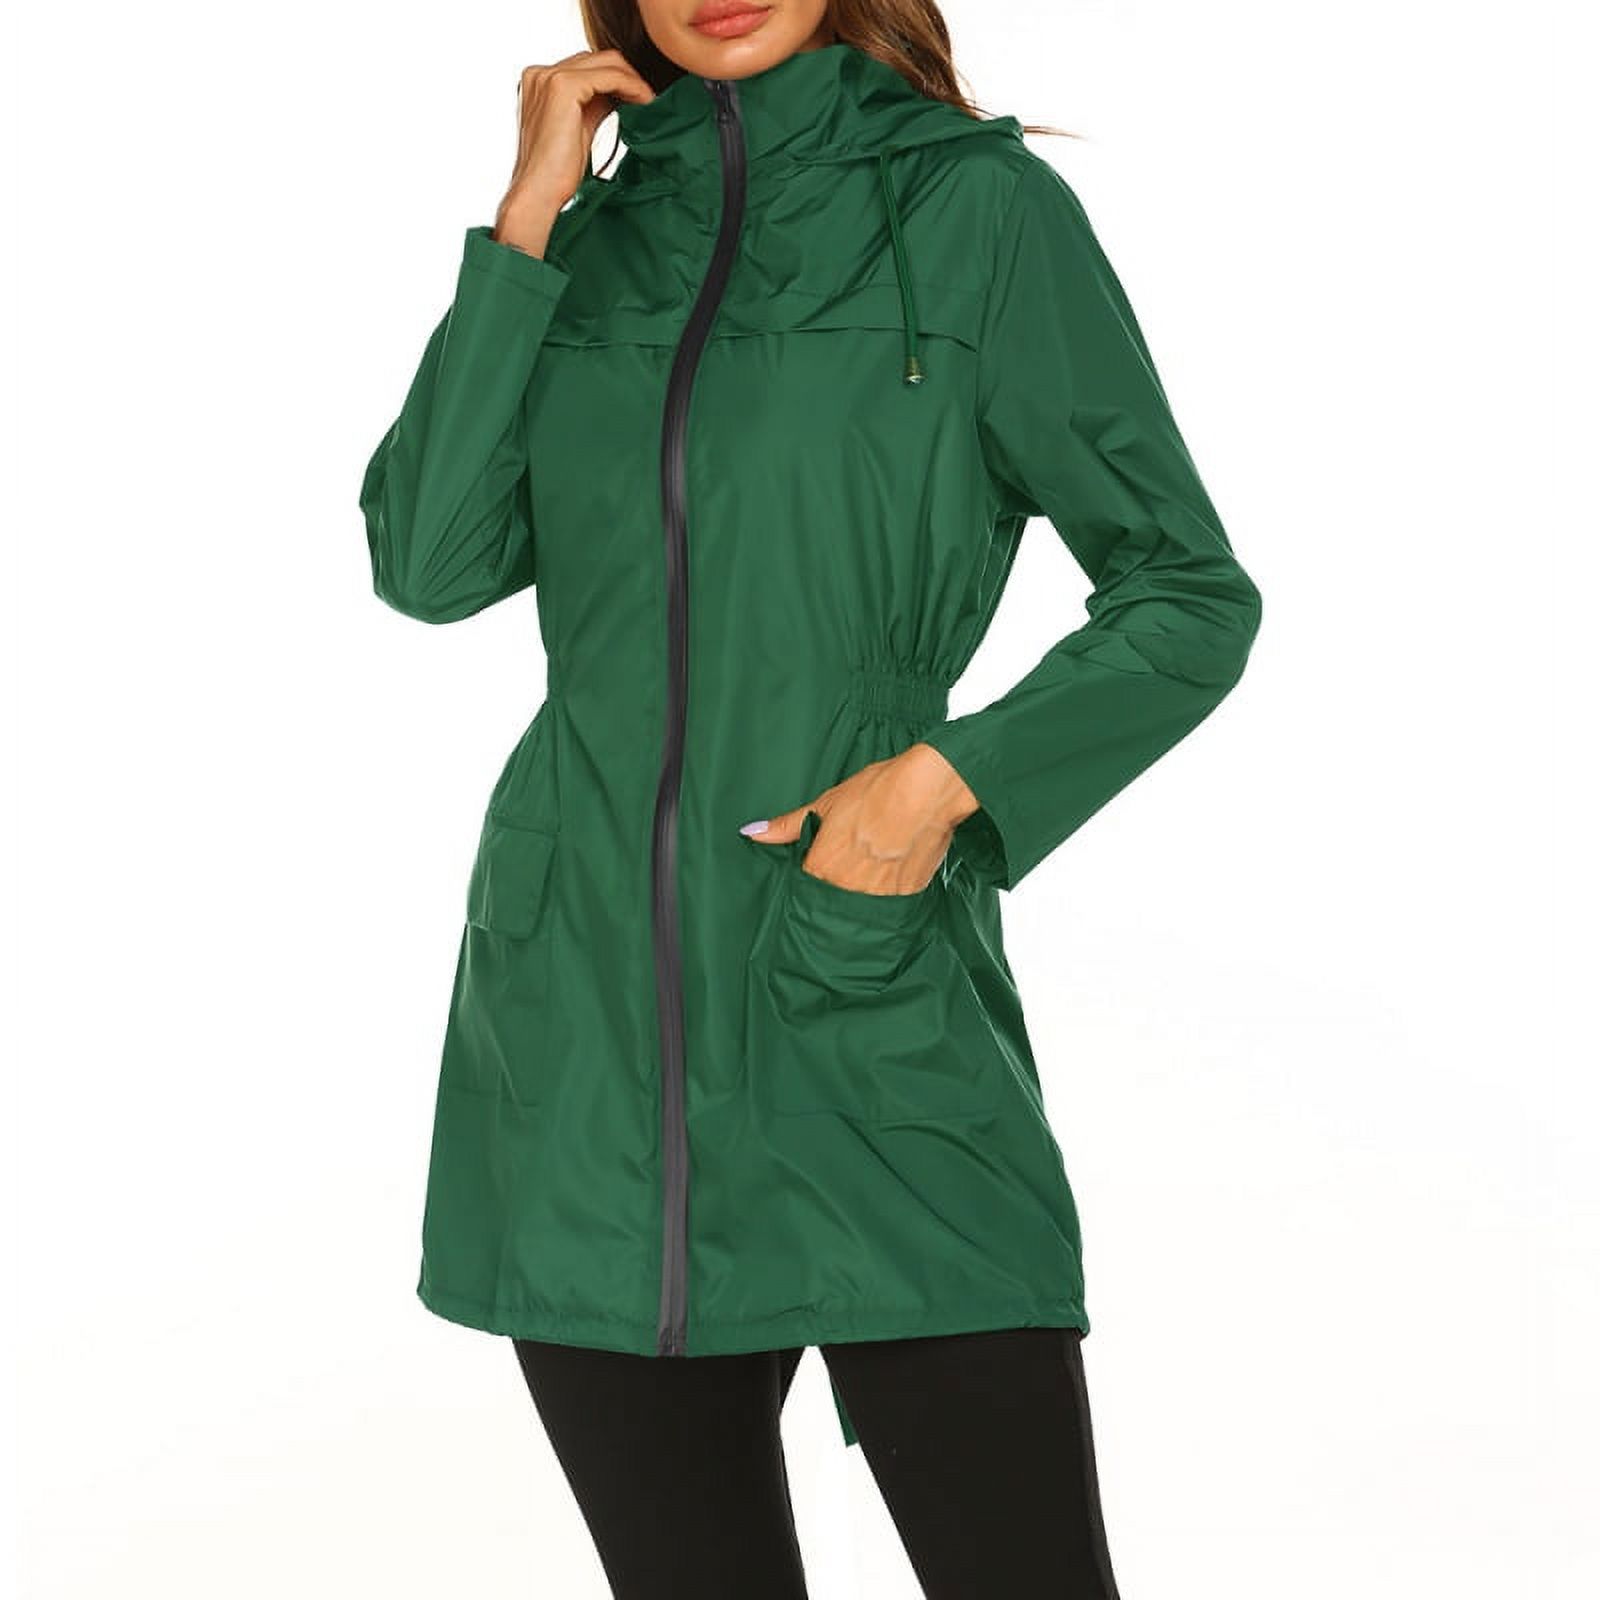 Women Waterproof Lightweight Rain Jacket Packable Outdoor Hooded Raincoat - image 4 of 5